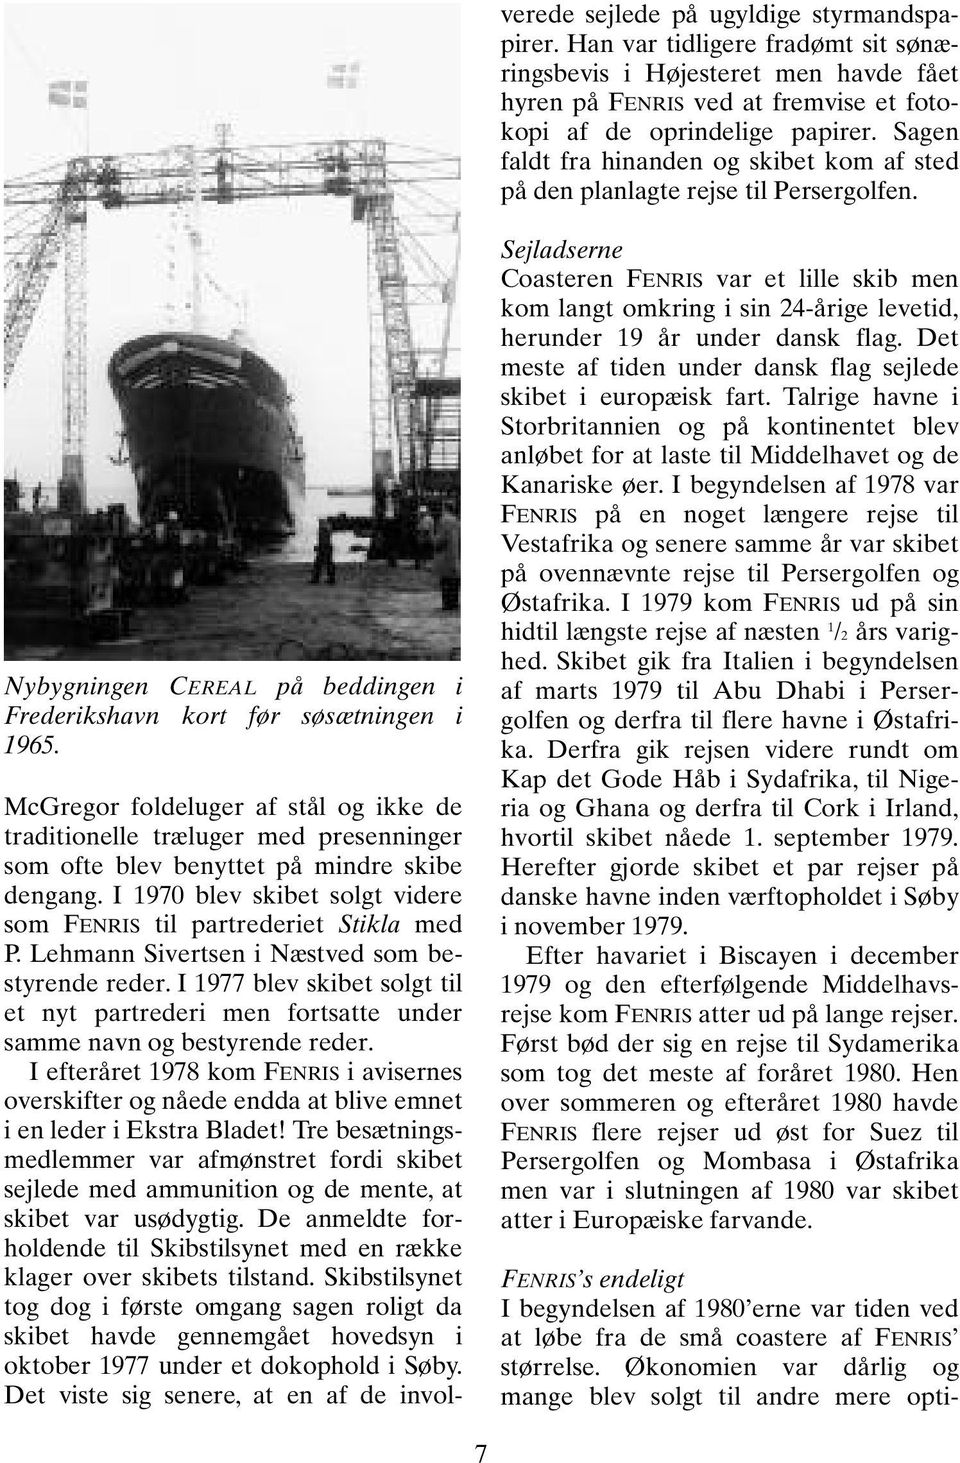 I efteråret 1978 kom FENRIS i avisernes overskifter og nåede endda at blive emnet i en leder i Ekstra Bladet!